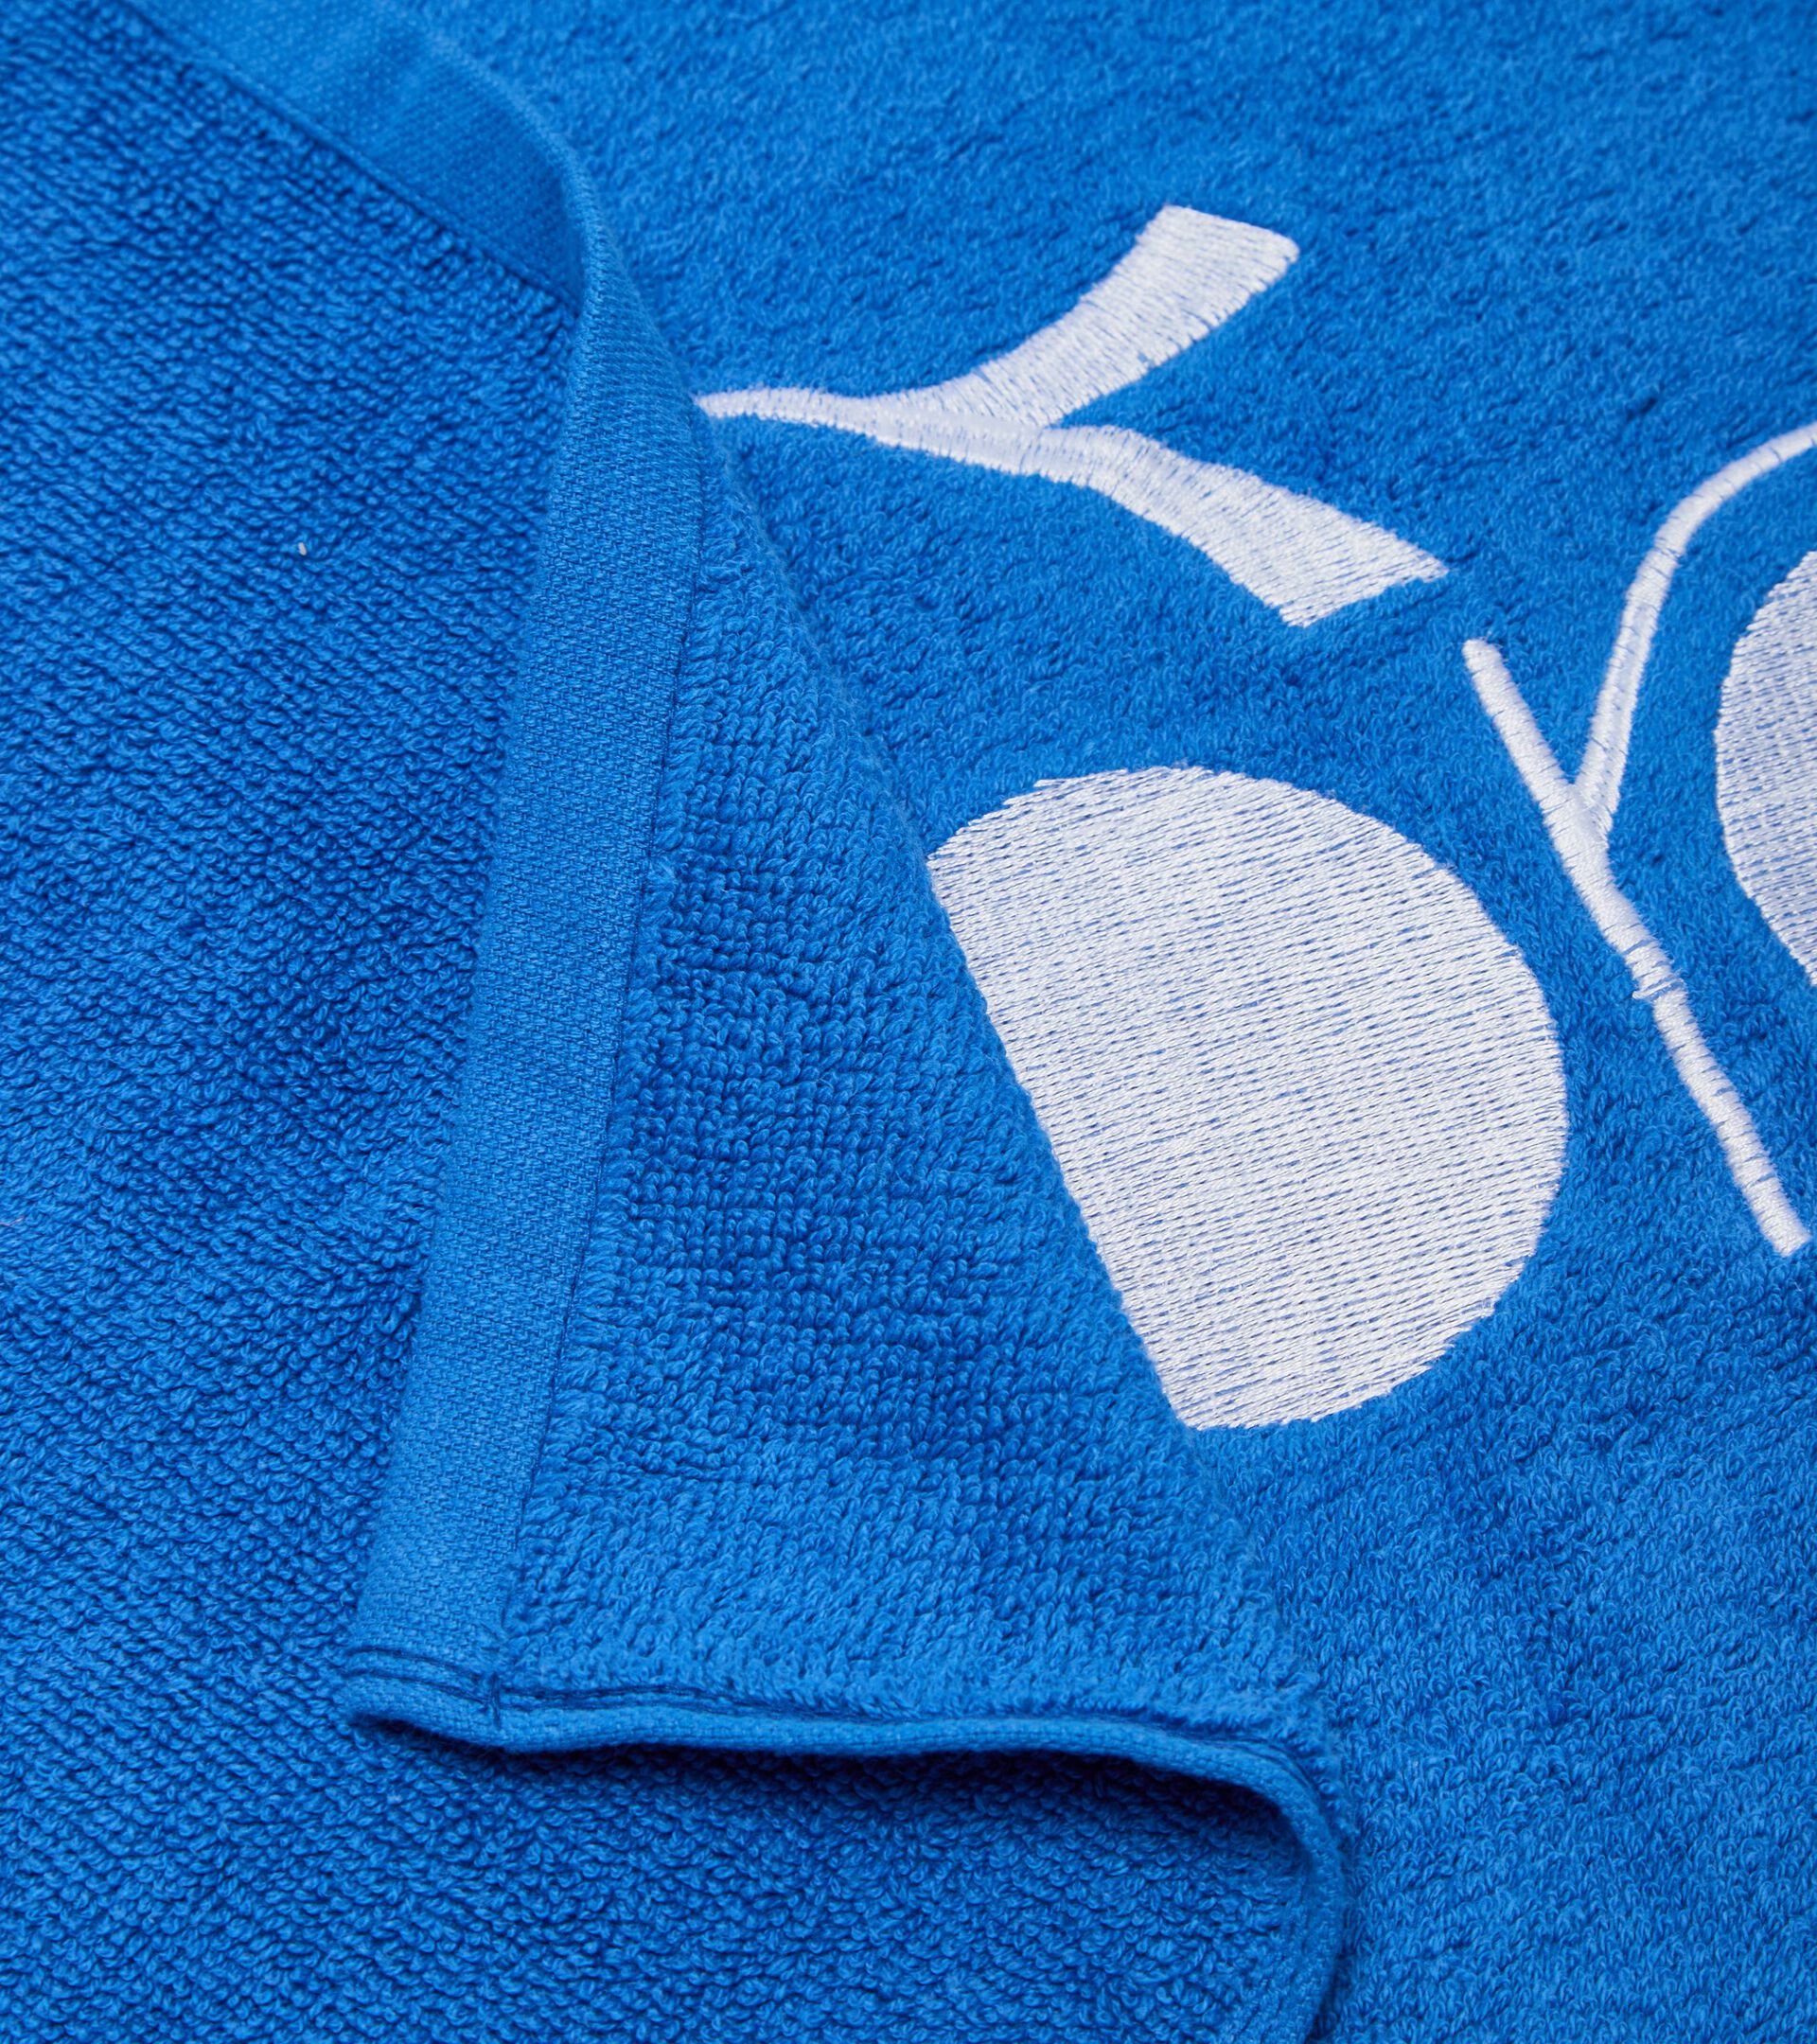 Cotton terry cloth towel TOWEL GYM PRINCESS BLUE - Diadora